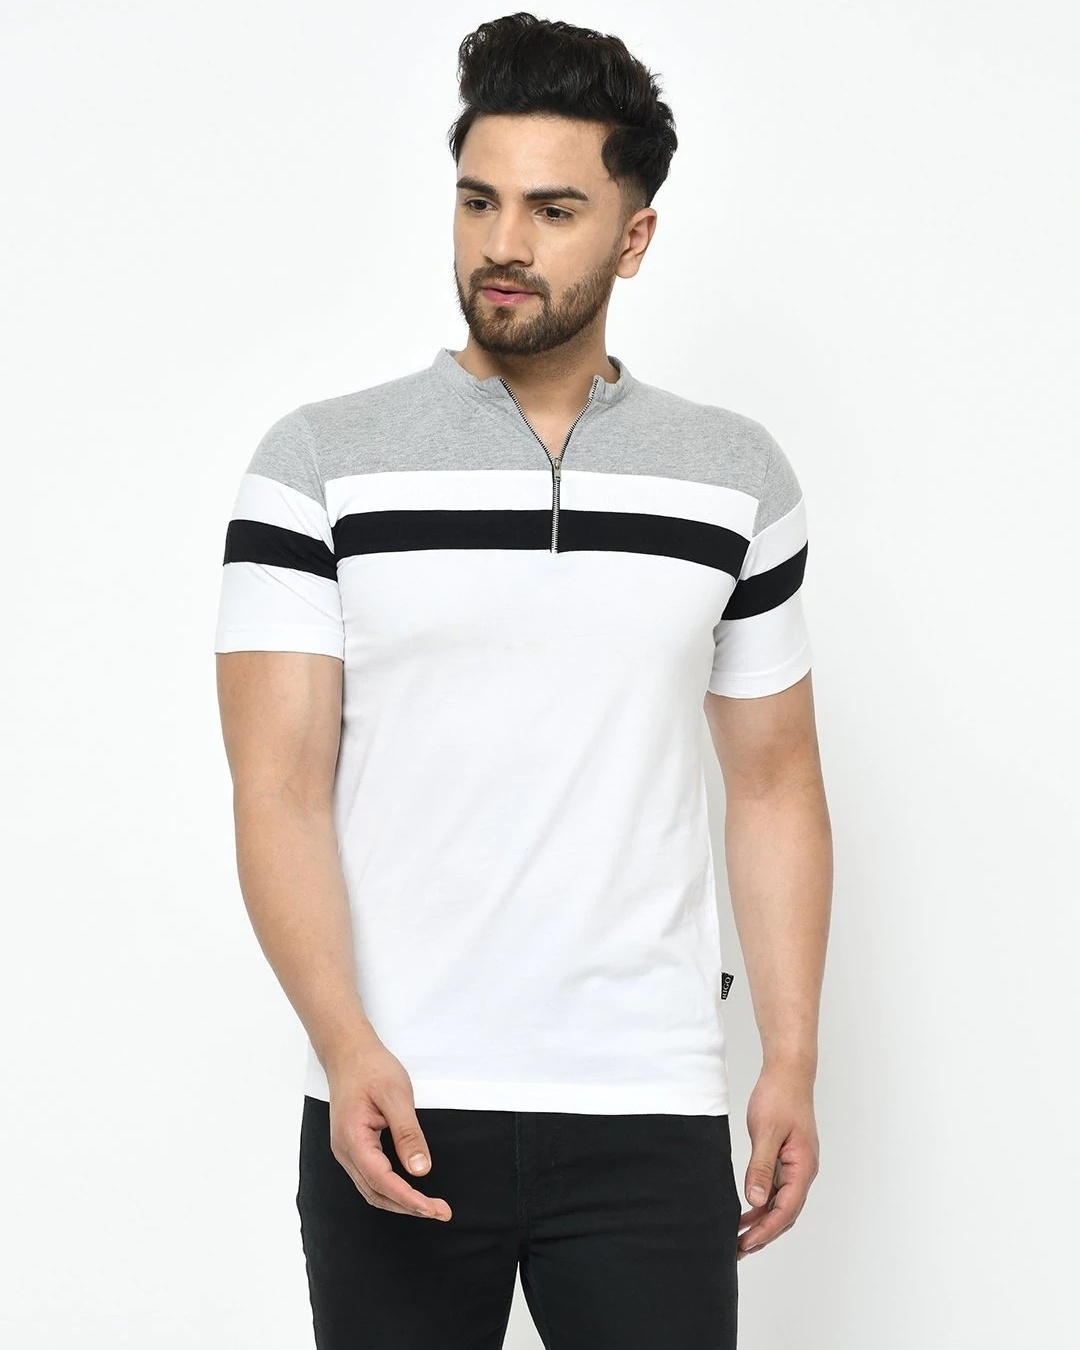 Buy Men's White Color Block Slim Fit T-shirt Online at Bewakoof